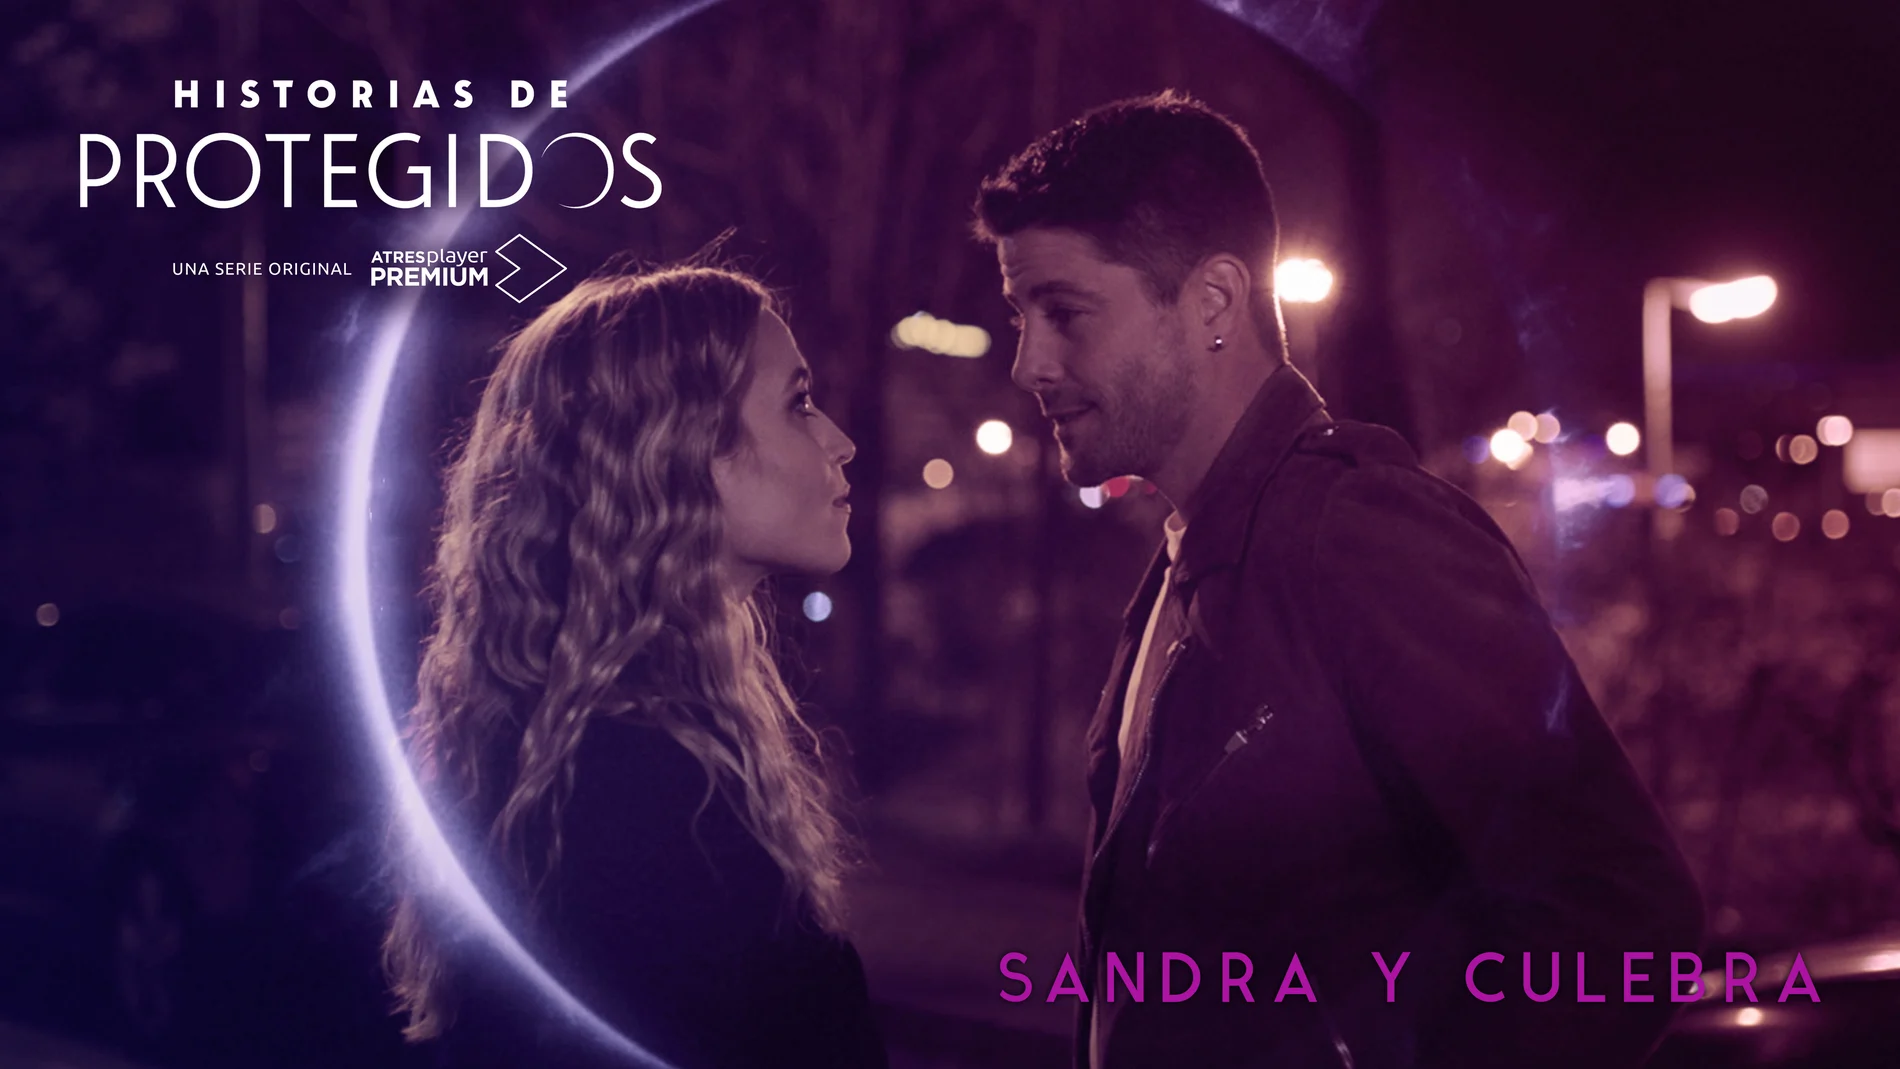 Sandra (Ana Fernández) y Culebra (Luis Fernández) protagonizan la primera de las 'Historias de Protegidos'